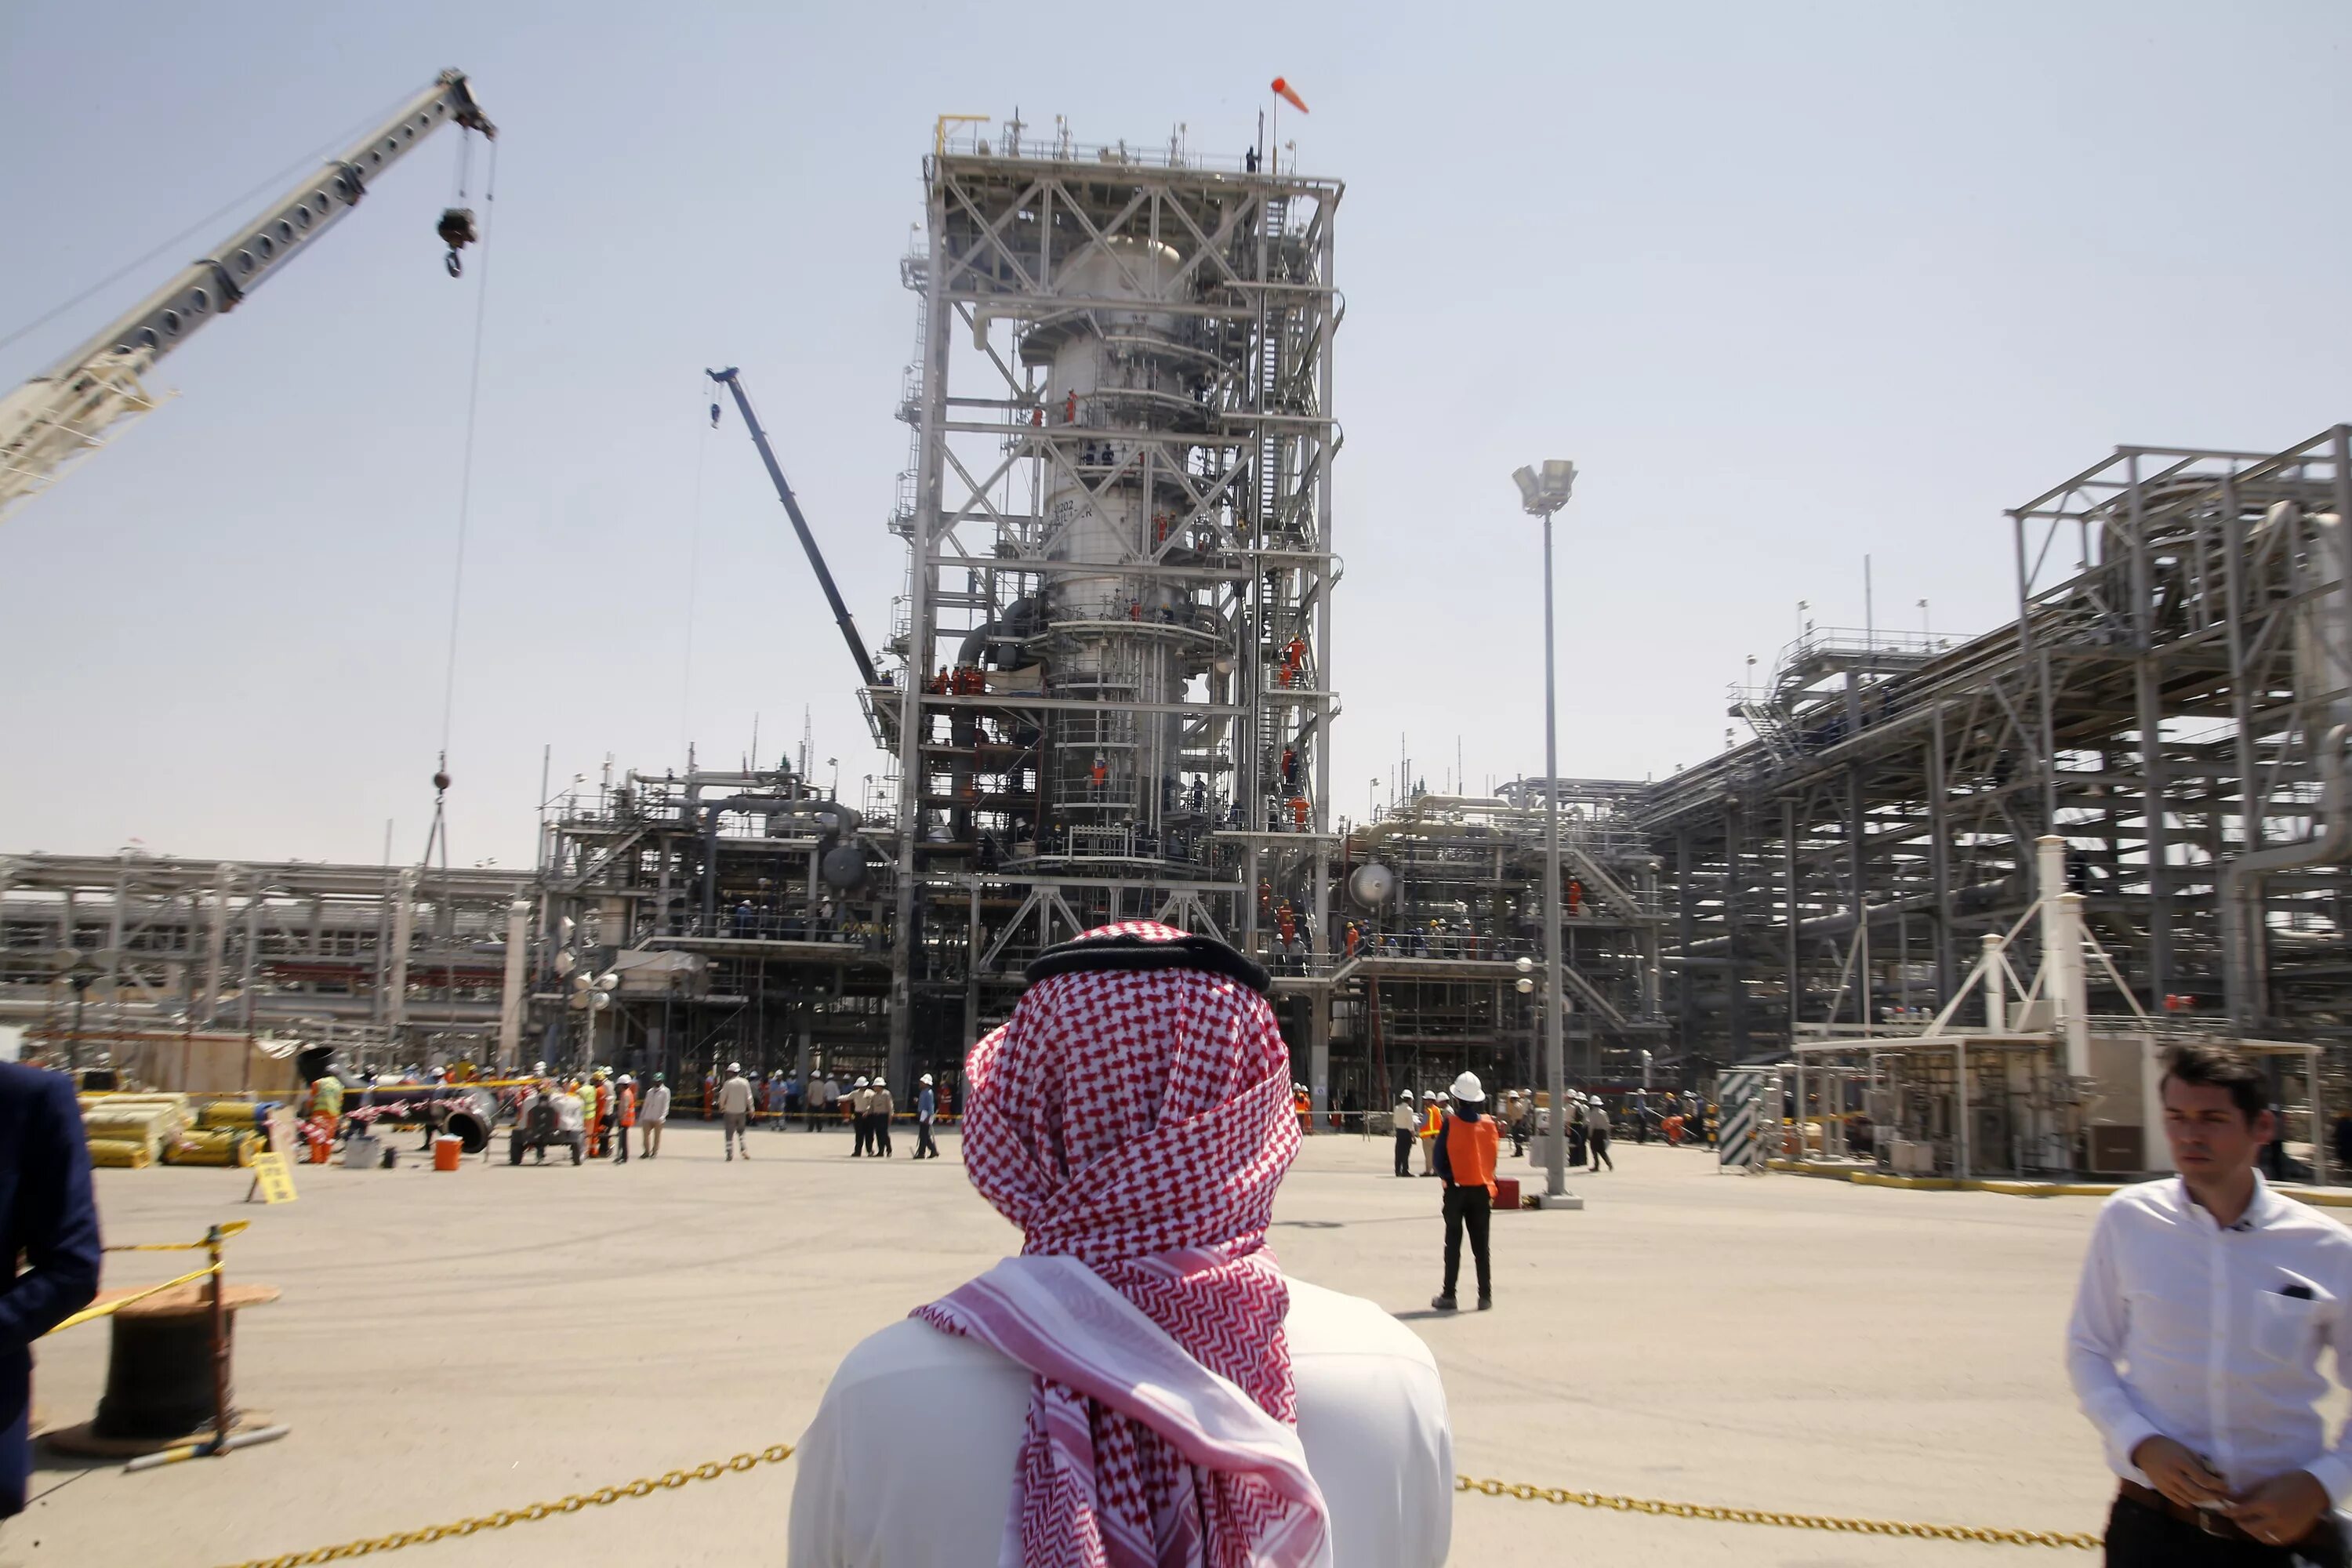 Нефть в арабских эмиратах. Нефтеперерабатывающий завод в Саудовской Аравии. Объединённые арабские эмираты добыча нефти. Саудовская Аравия нефтедобыча. Нефтедобыча в ОАЭ.